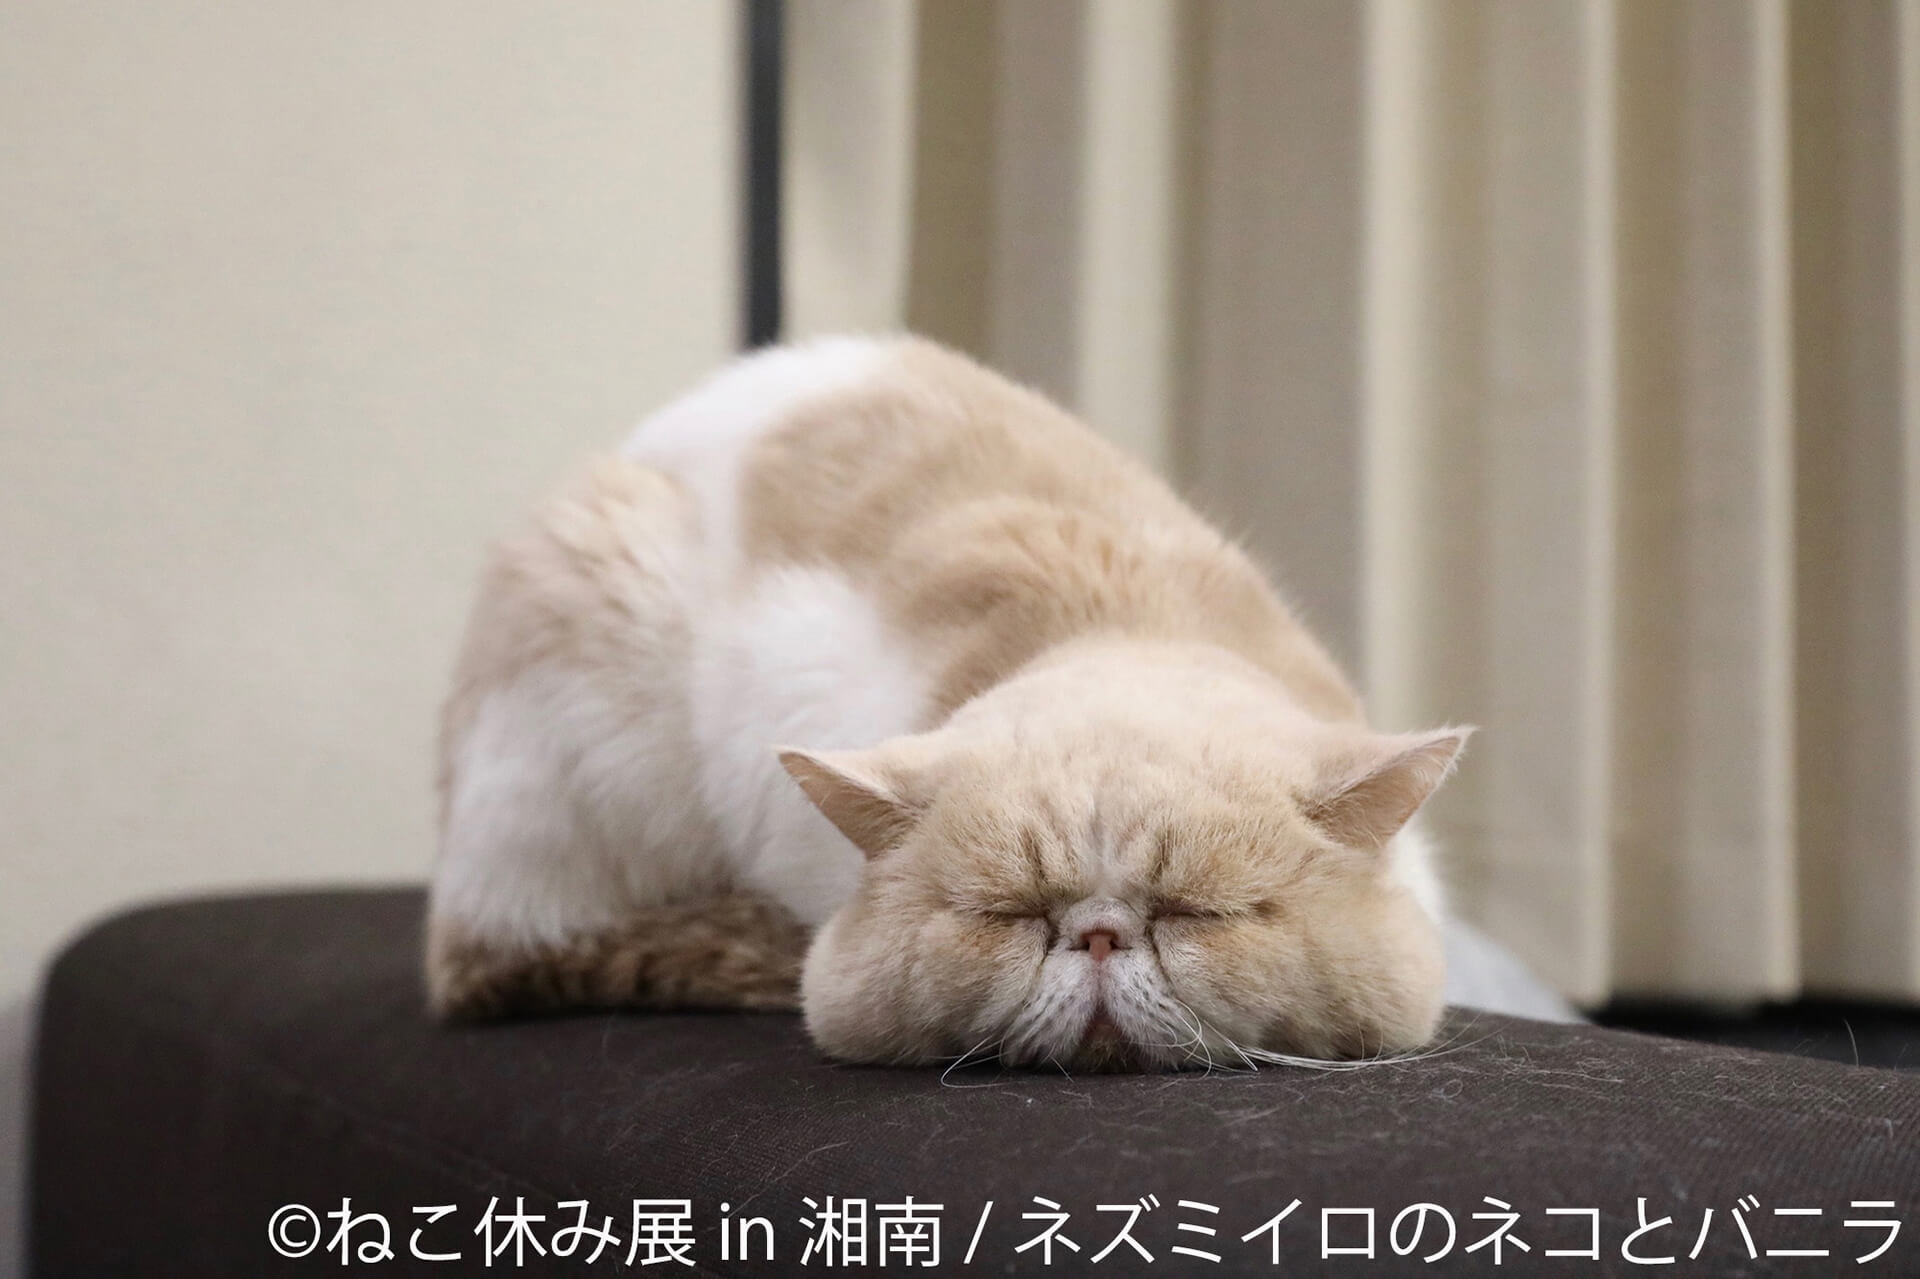 この写真はねこ休み展 in 湘南の展示作品で、眠そうな顔をした猫です